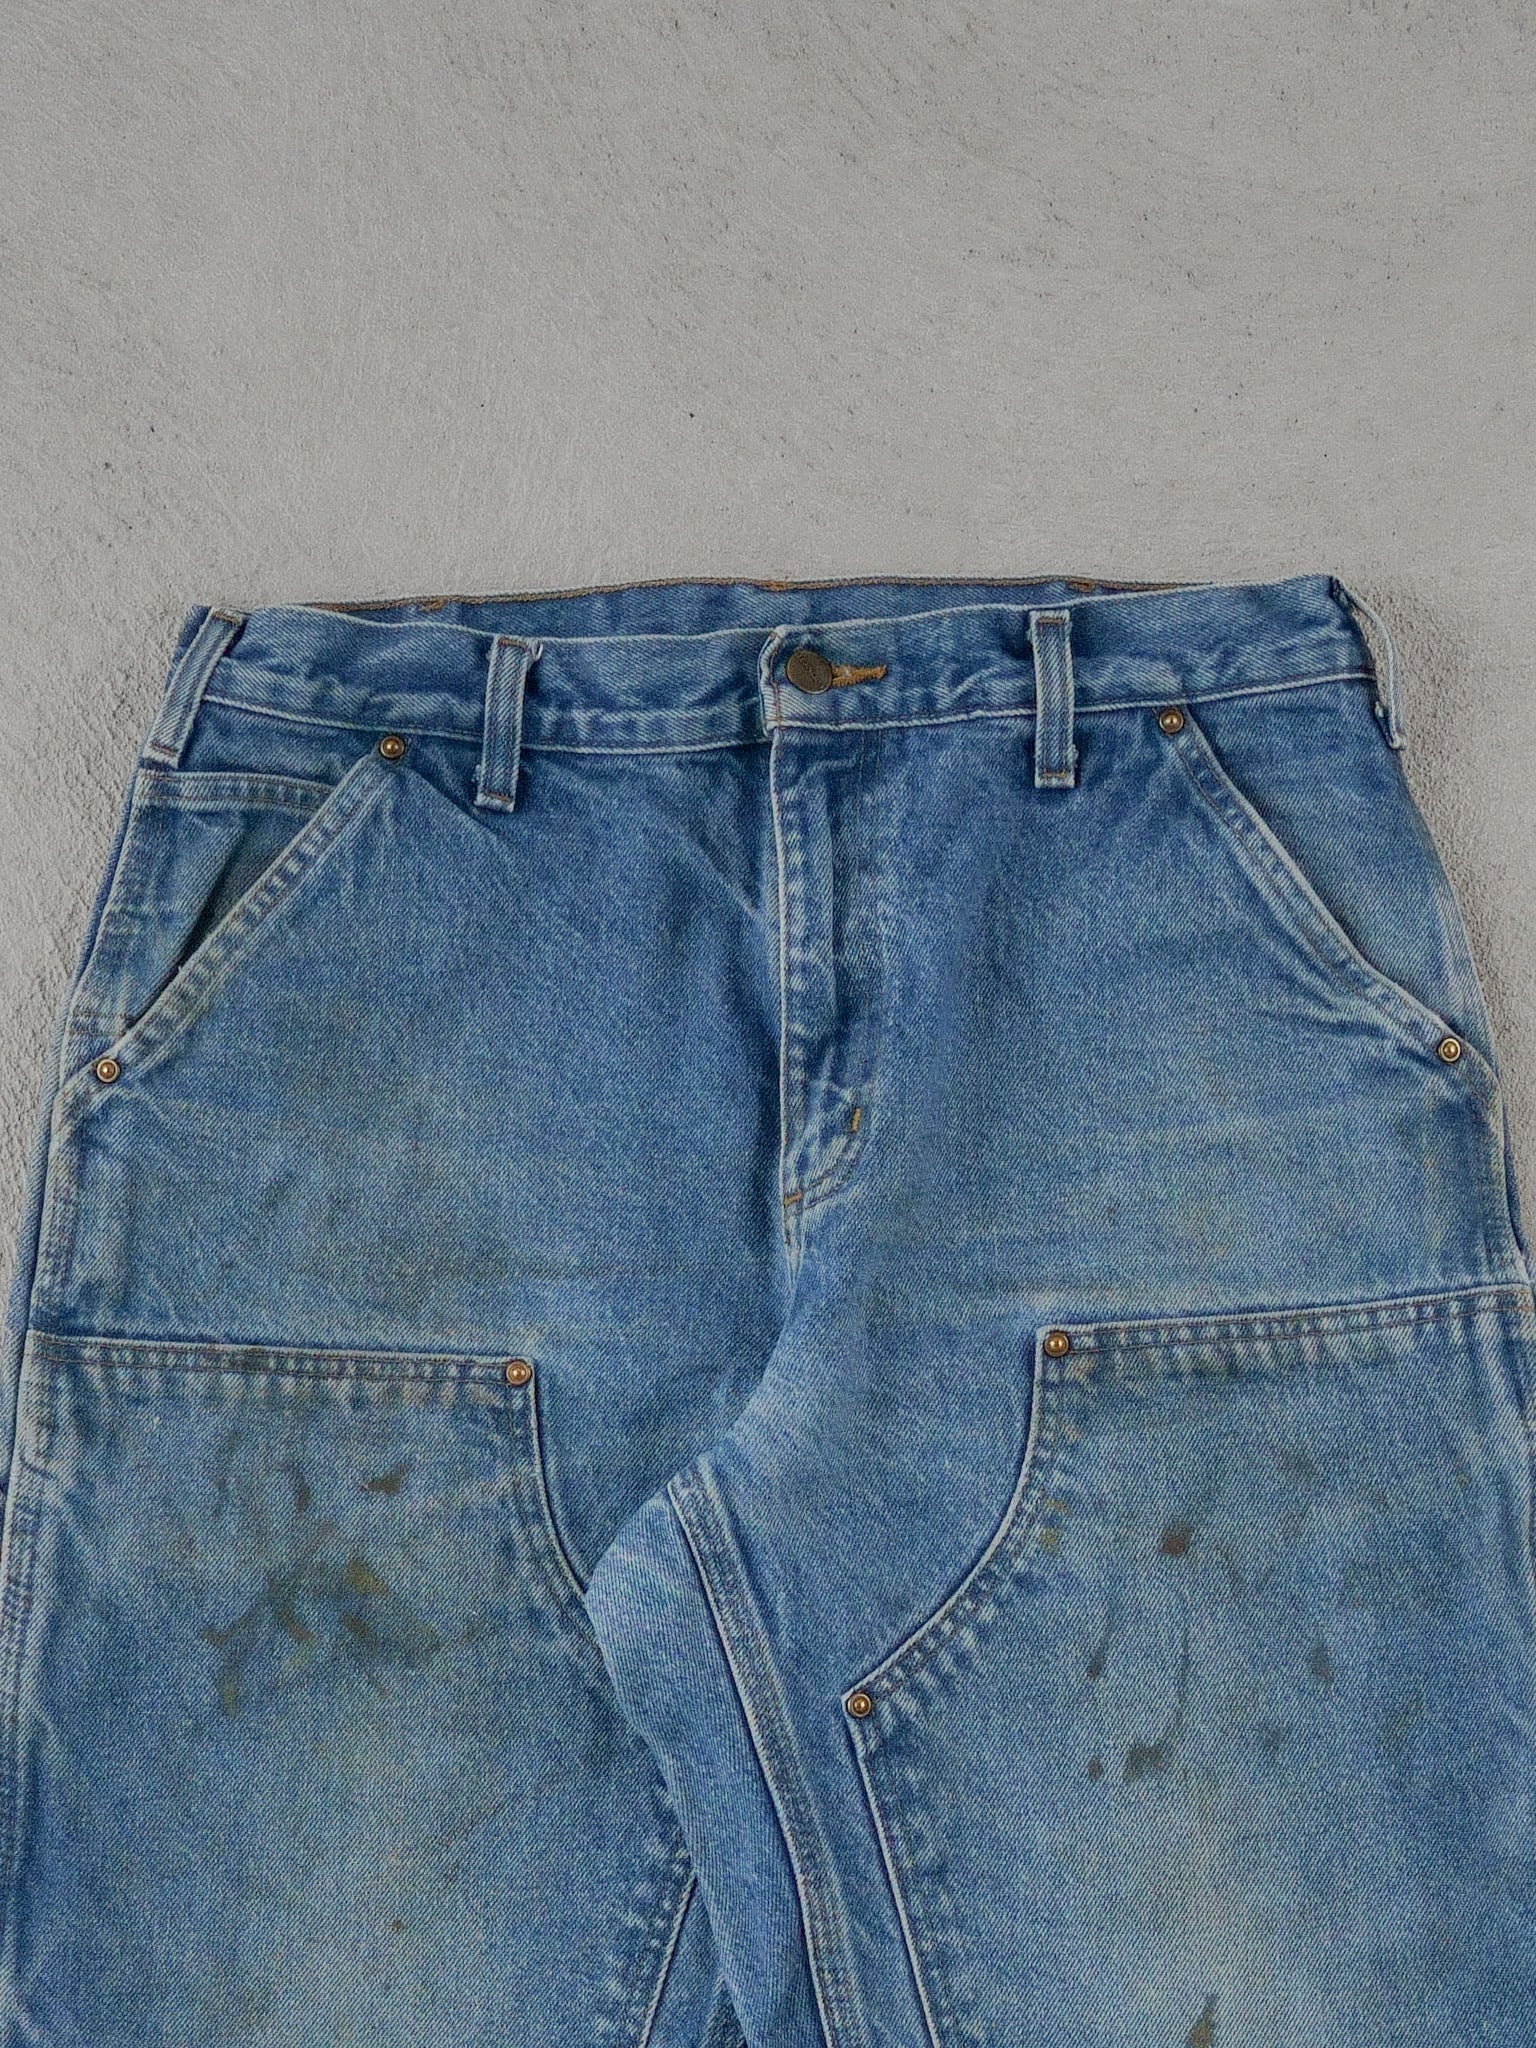 Vintage 90s Blue Carhartt Double Knee Carpenter Pants (32x30)